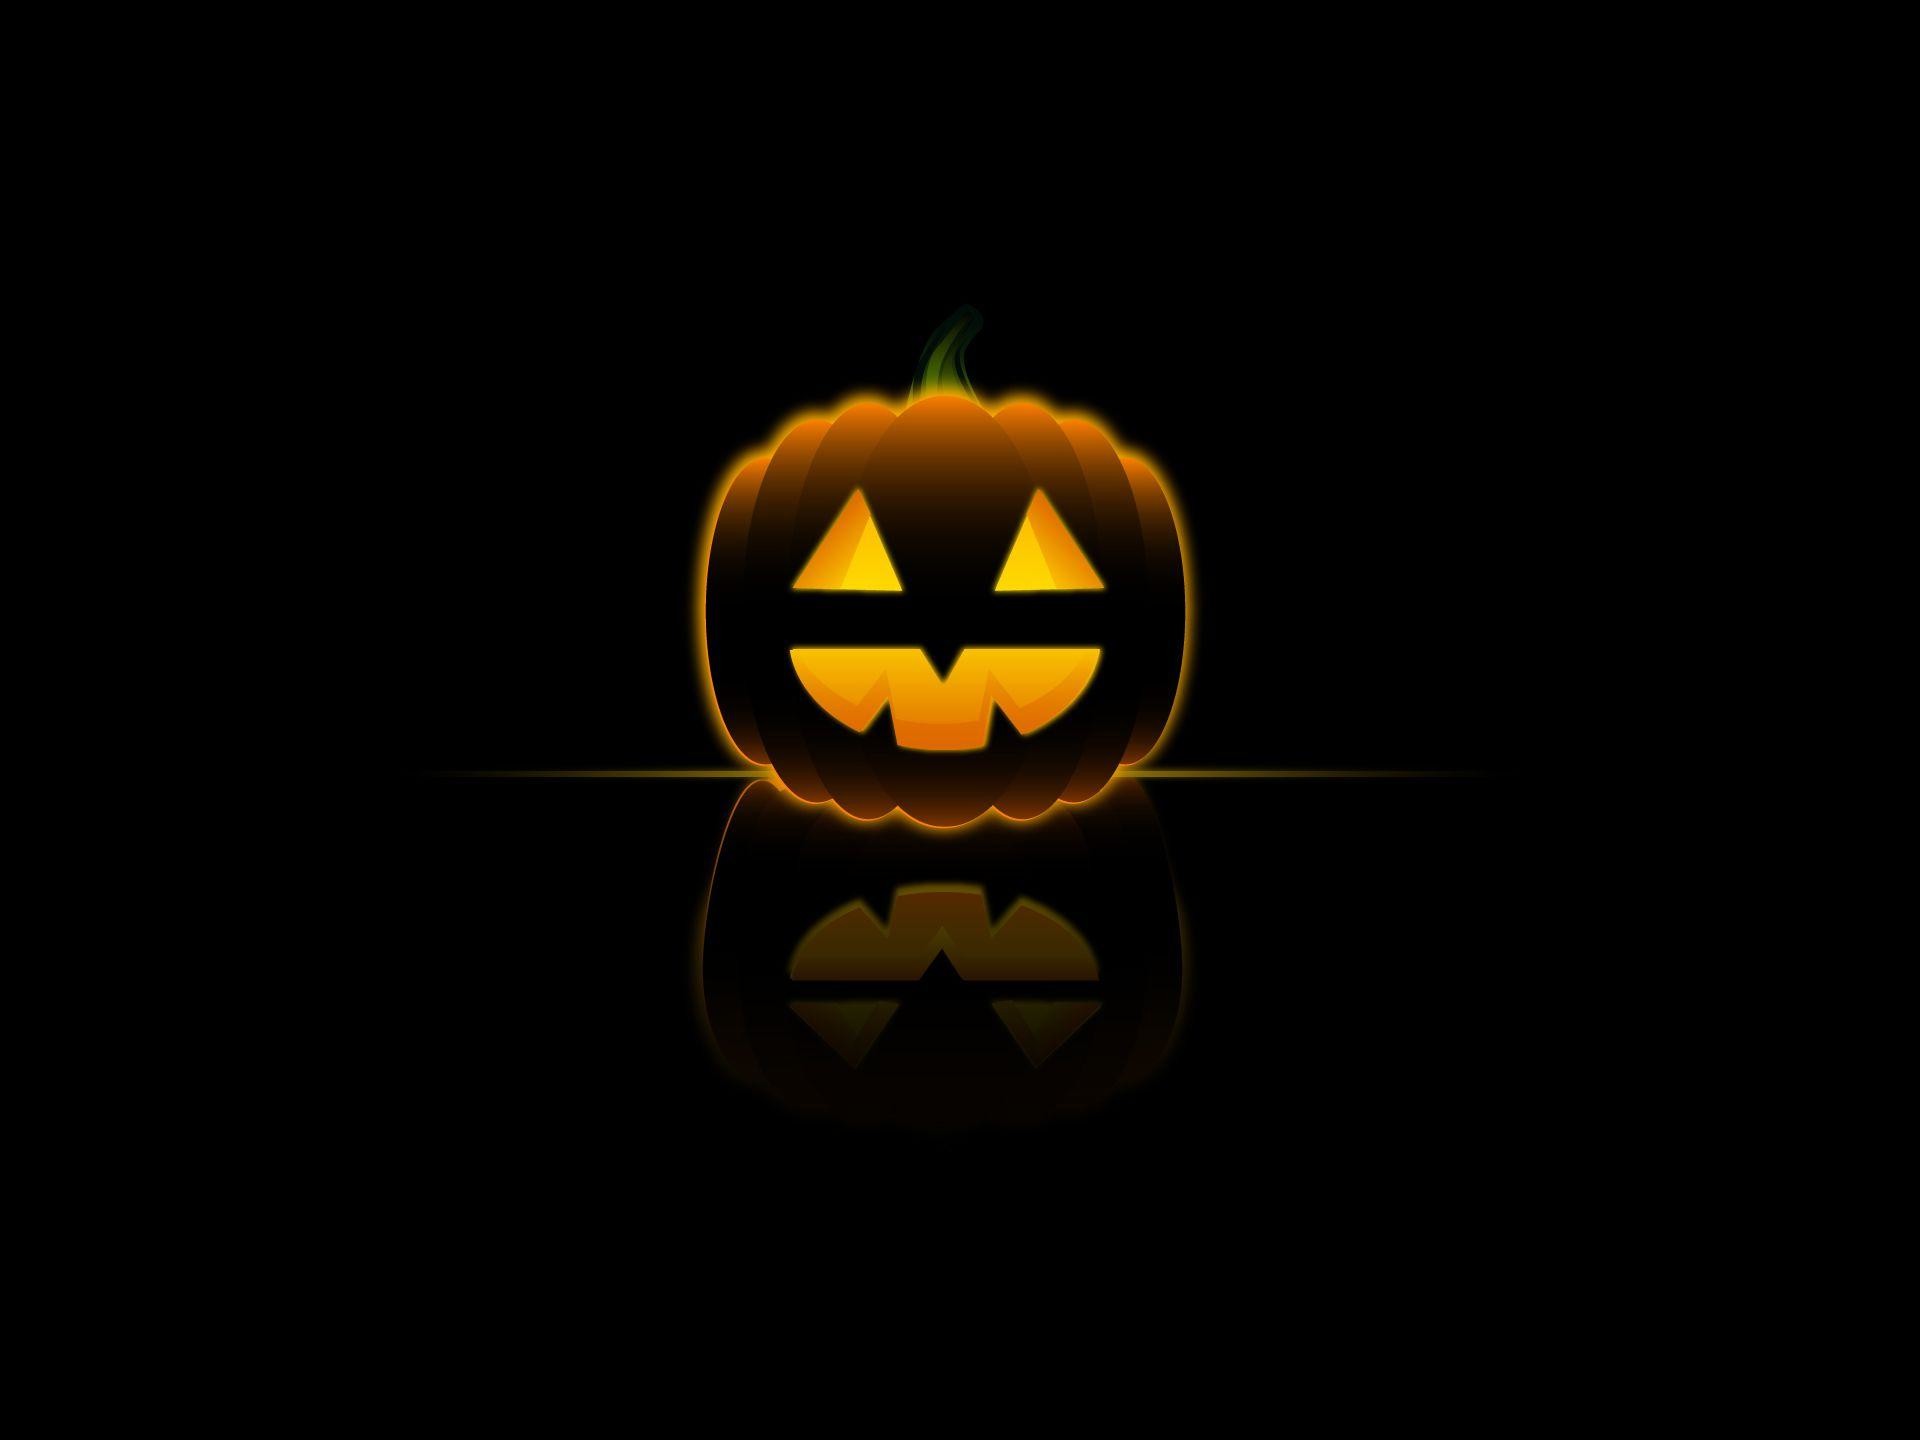 Wallpapers For > Halloween Pumpkin Backgrounds Desktop